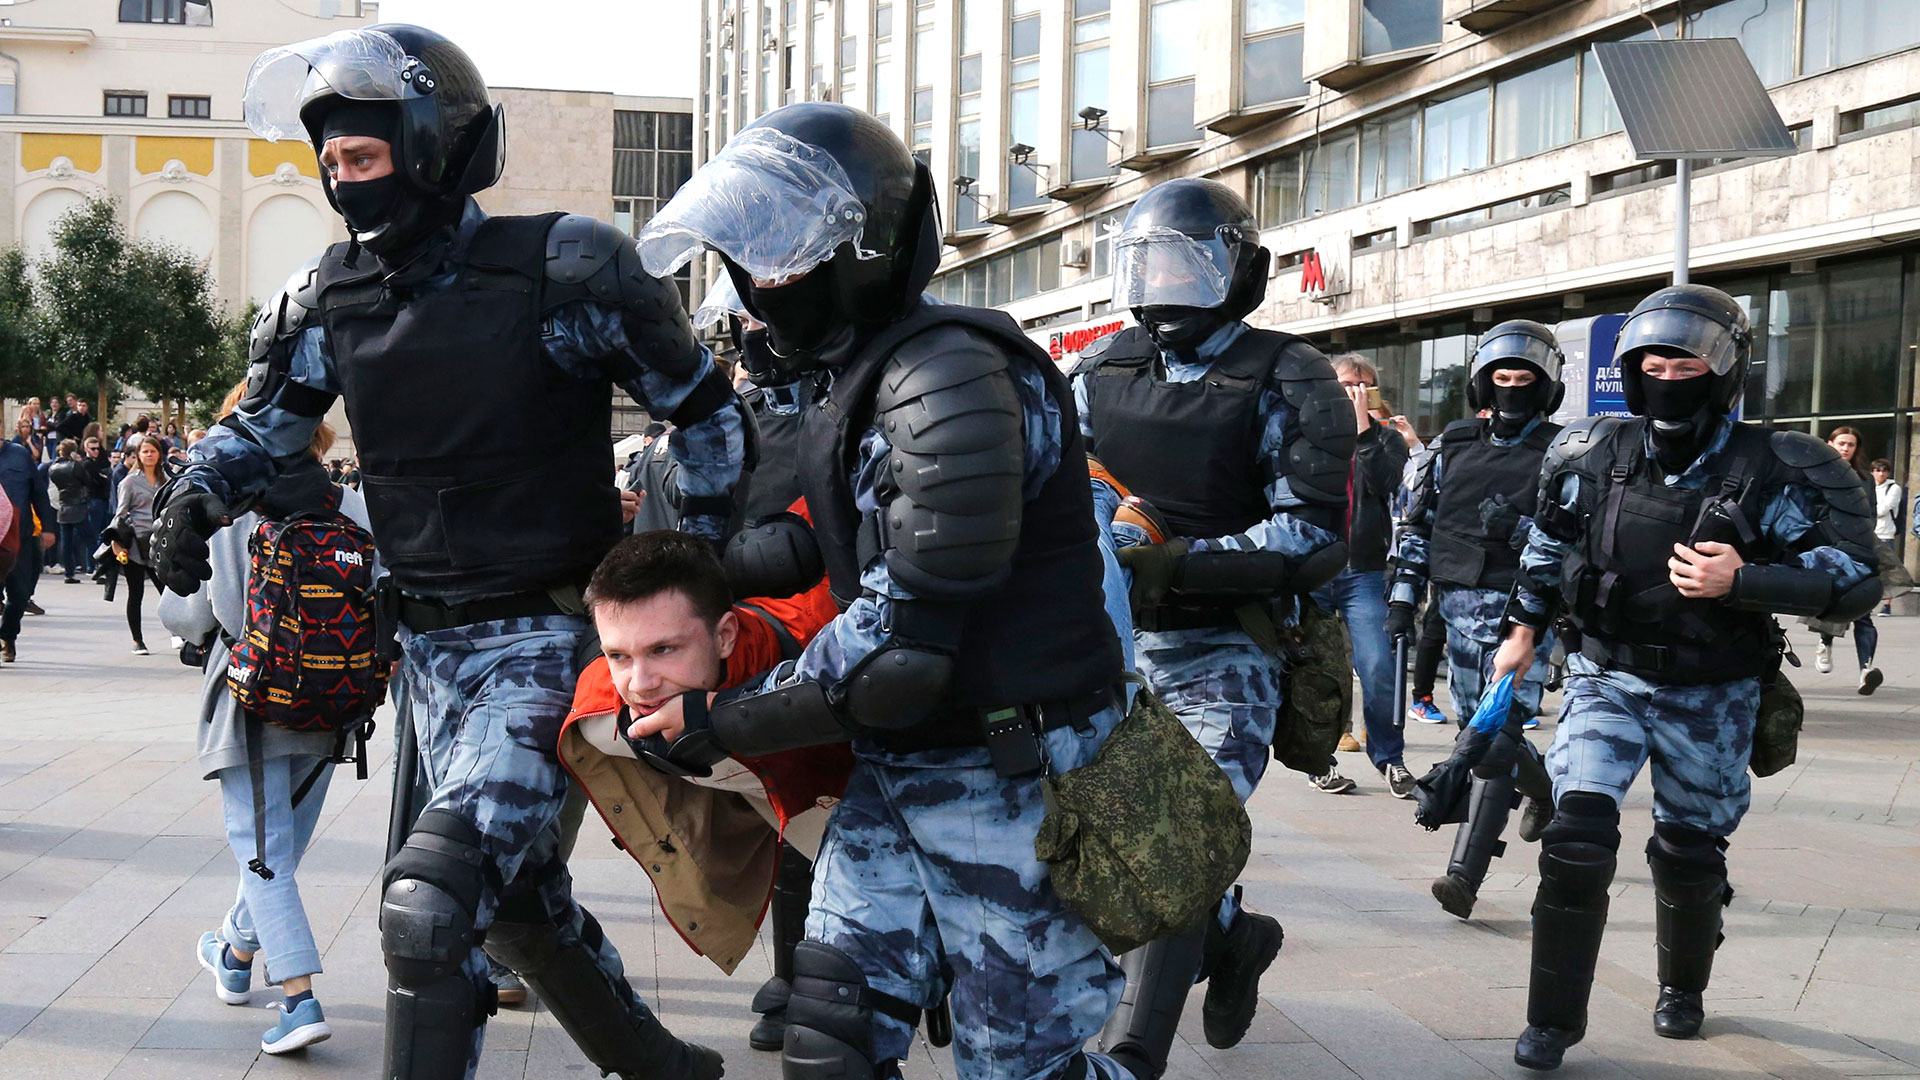 Detención de un manifestante en Moscú el sábado 3 de agosto de 2019 (AP Photo/Alexander Zemlianichenko)

